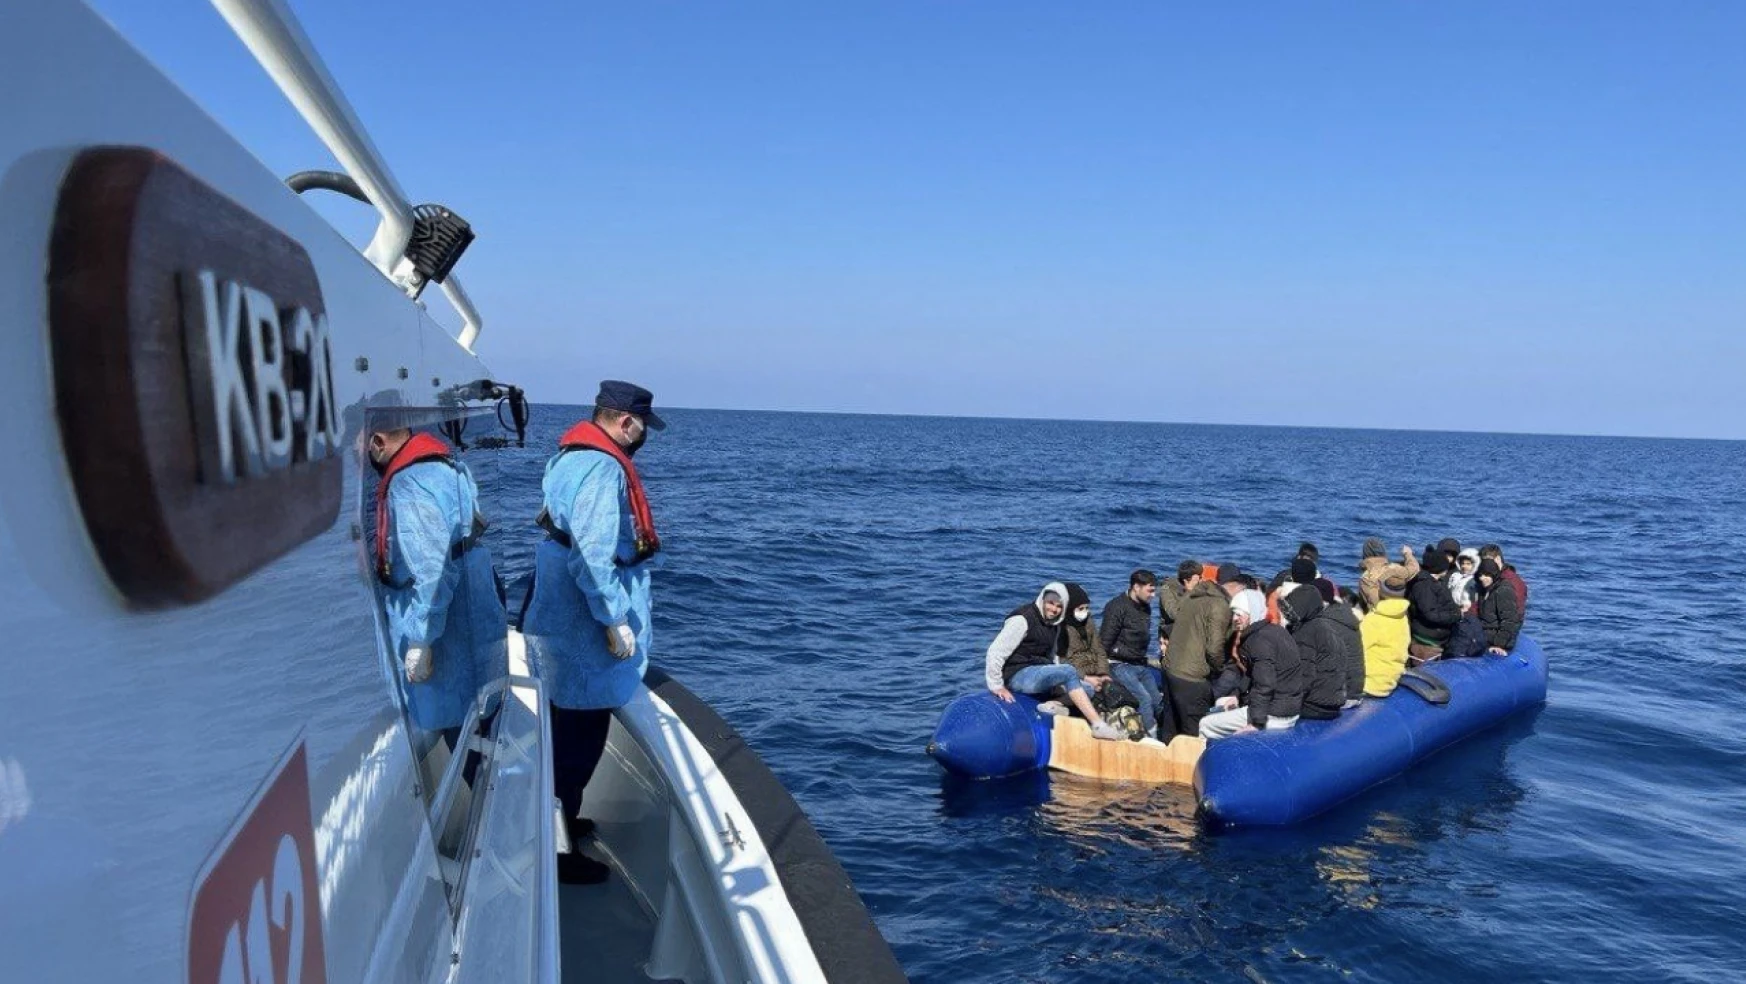 Yunan unsurlarınca ölüme terk edilen 17'si çocuk 40 kaçak göçmen kurtarıldı